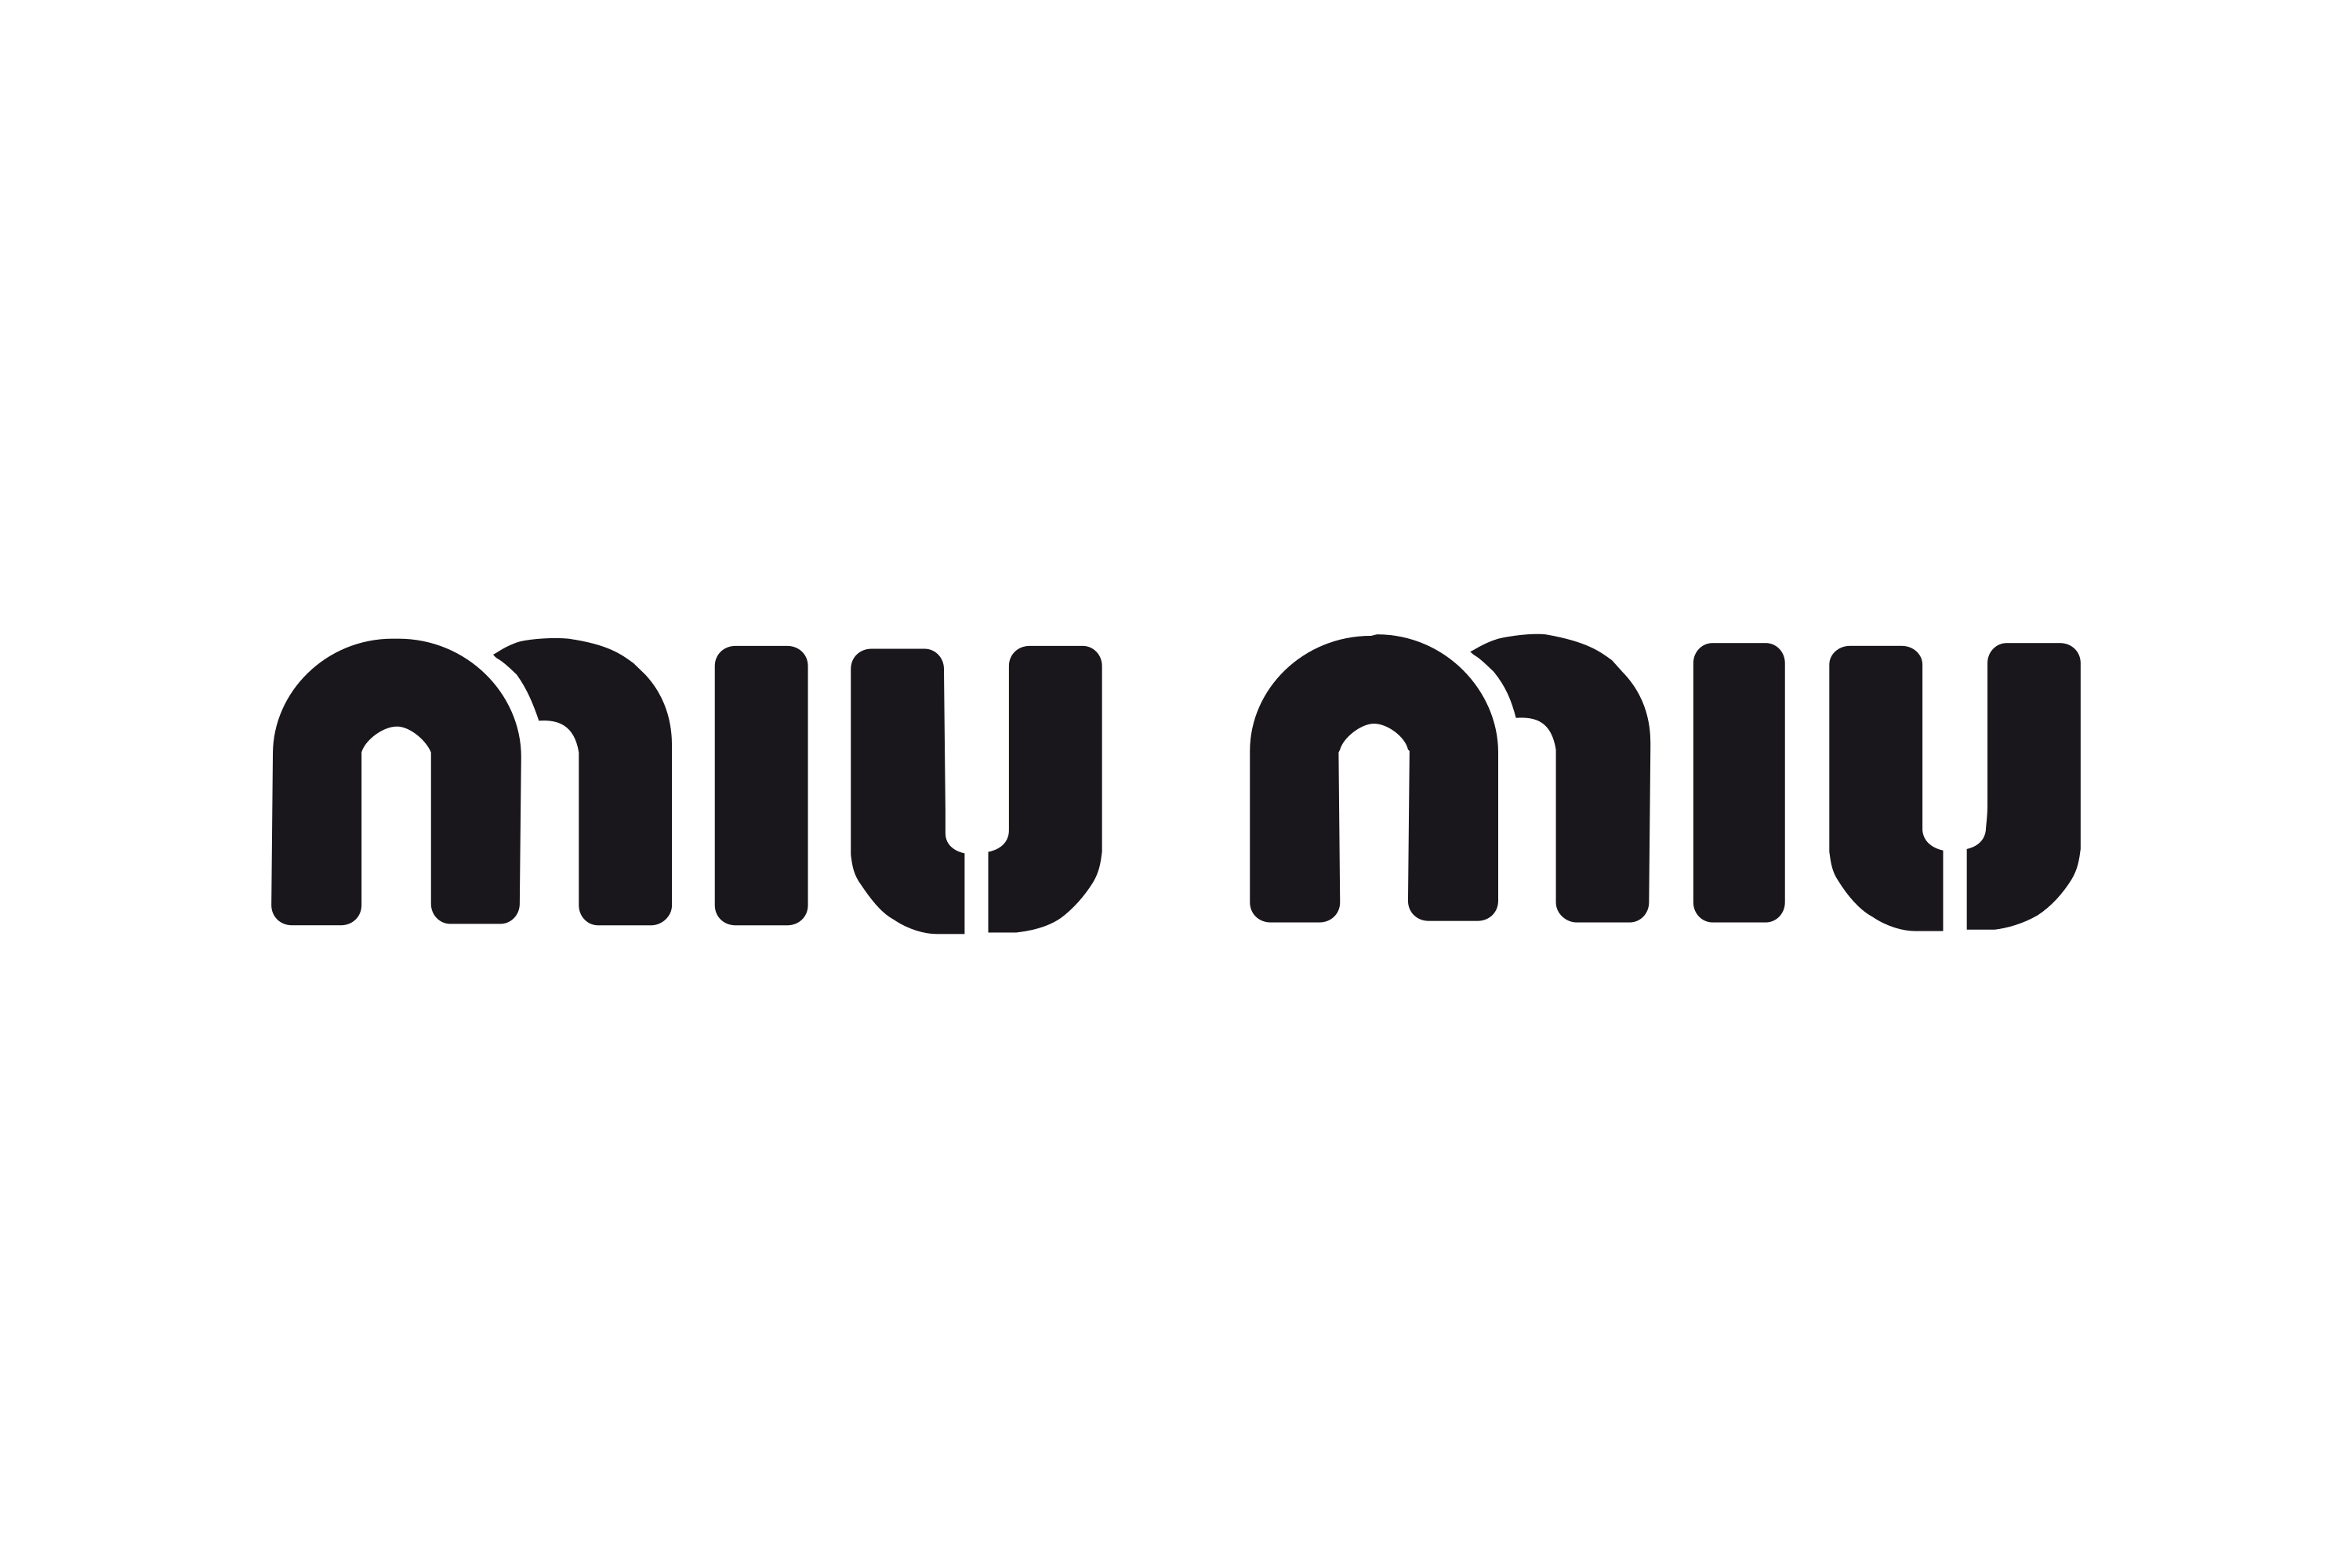 Download Miu Miu Logo in SVG Vector or PNG File Format - Logo.wine